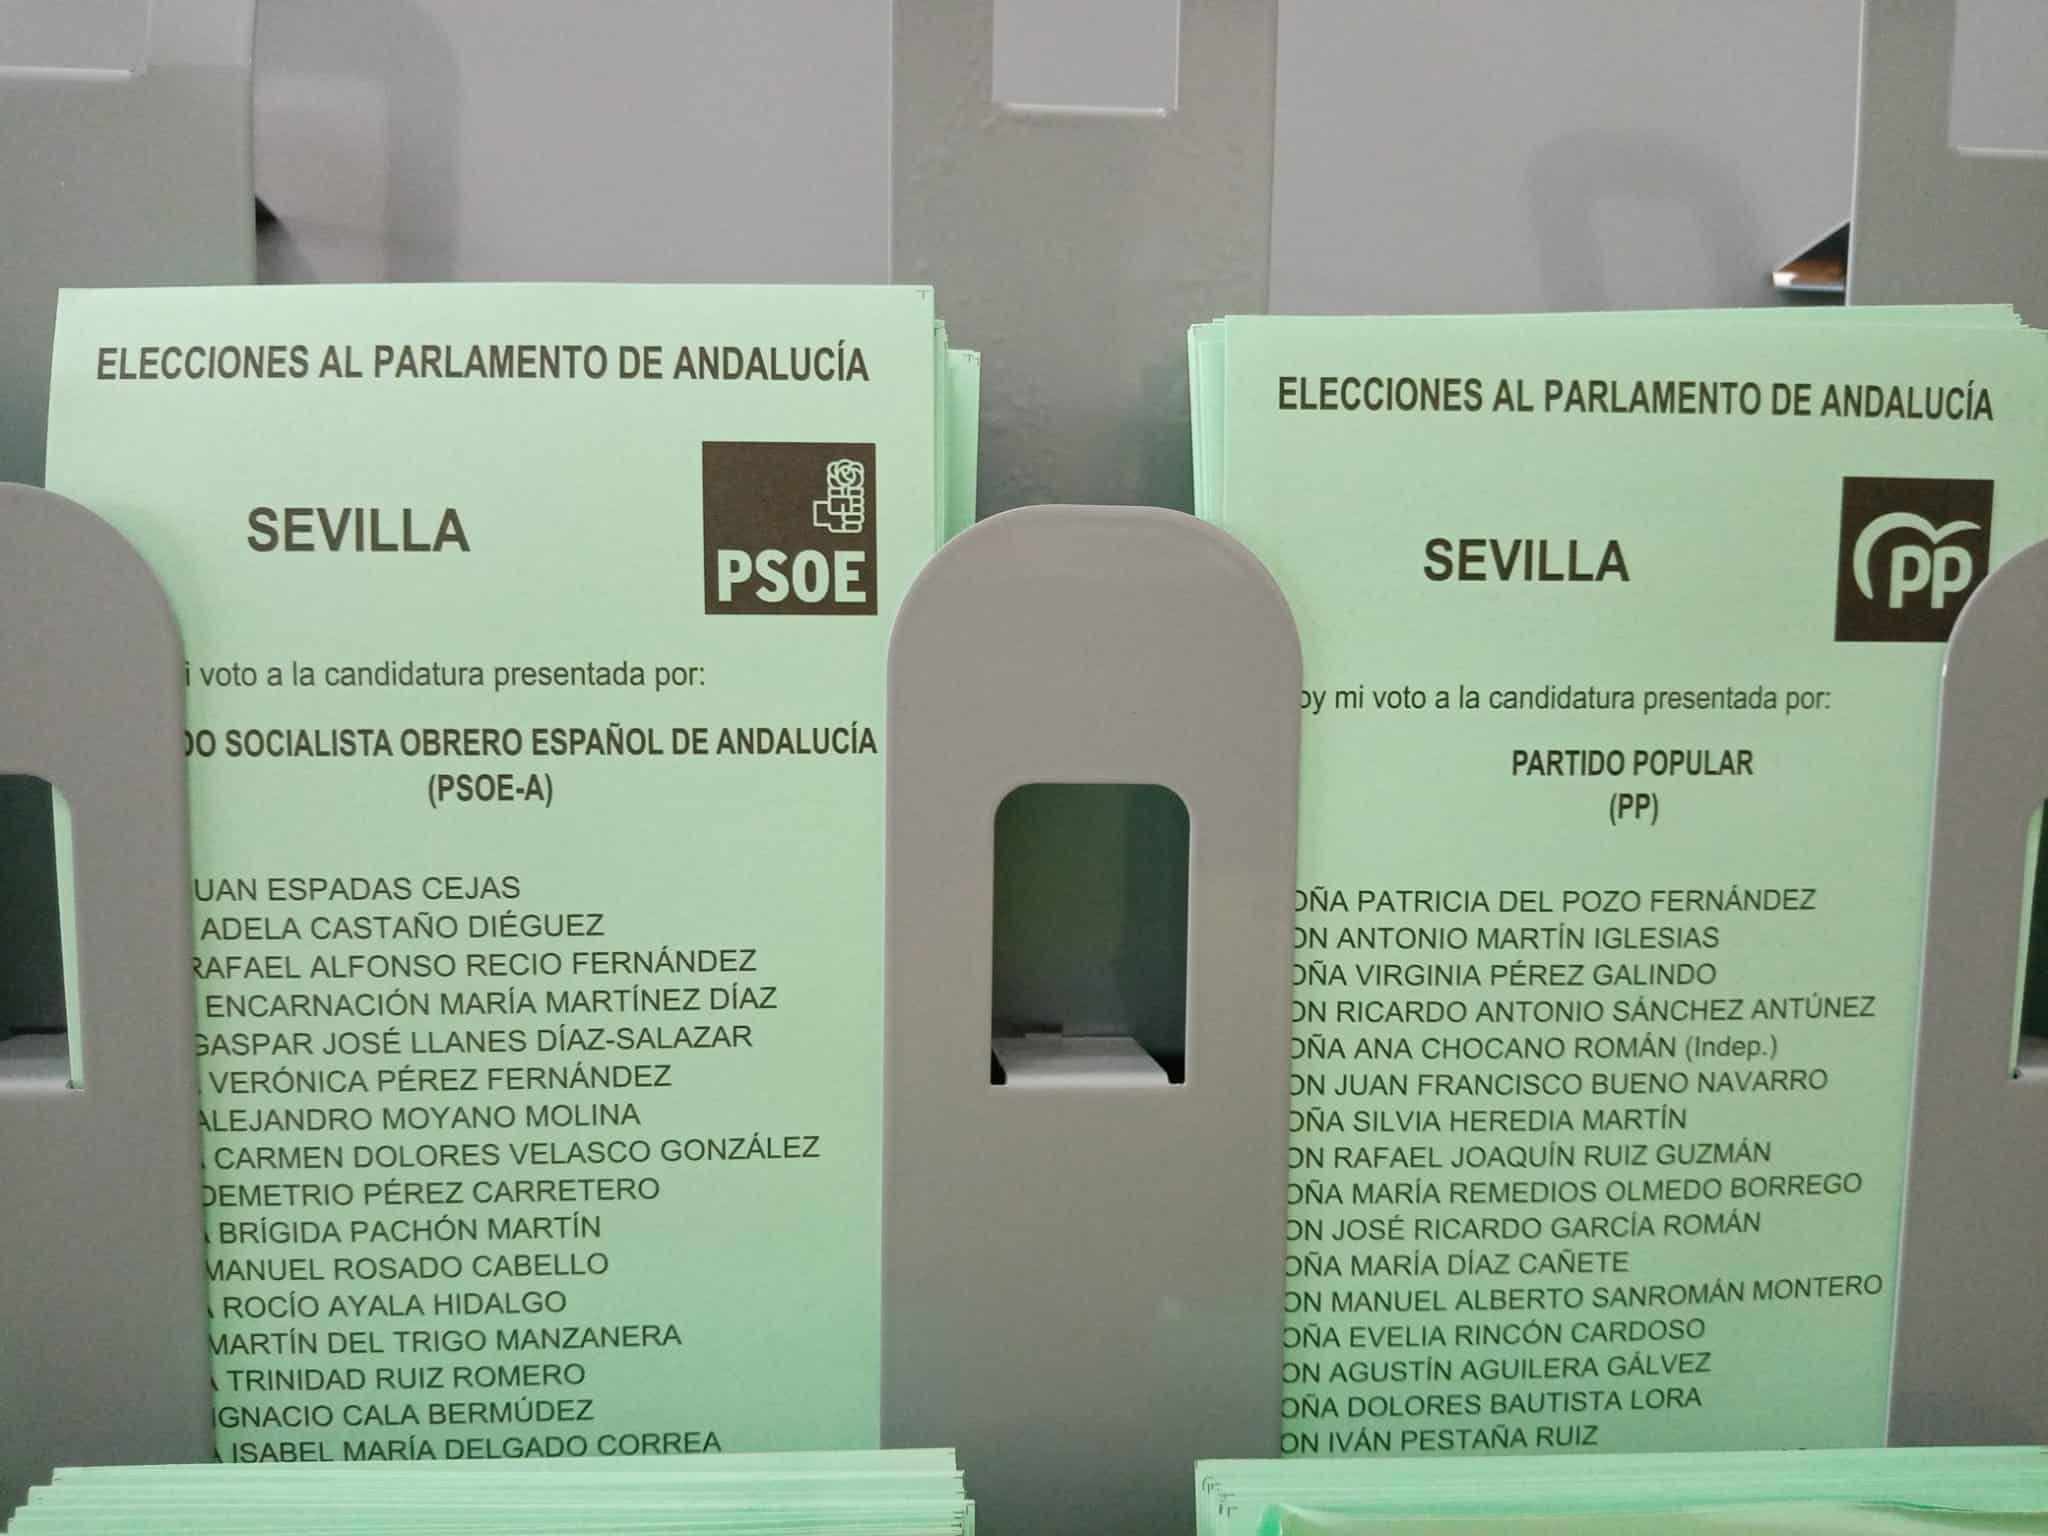 Papeletas del PSOE y PP para el 19-J, colocadas en el interior de una cabina a disposición de los electores.